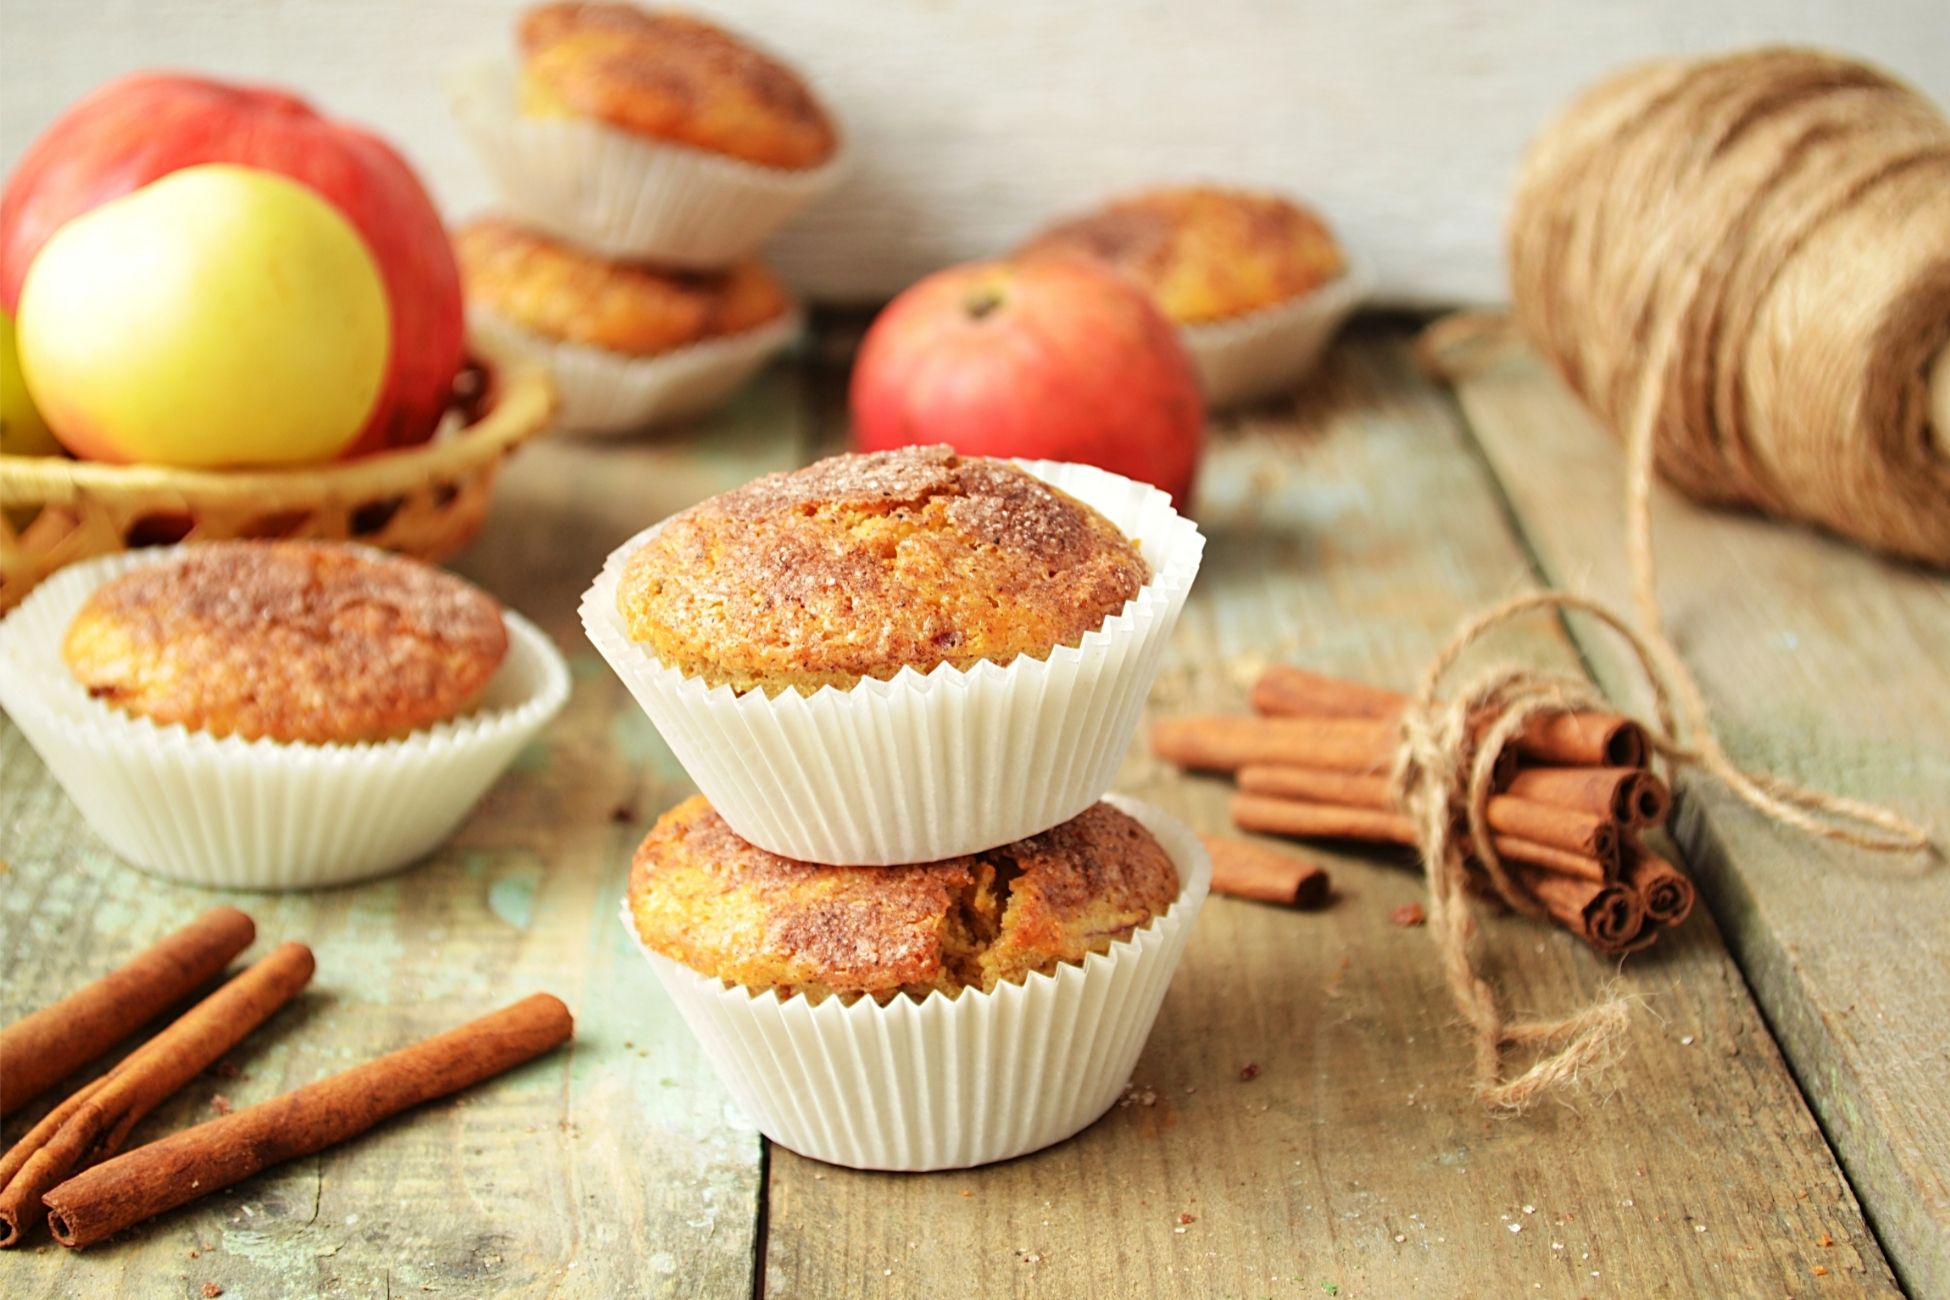 Cinnamon Sugar Apple Muffins Recipe